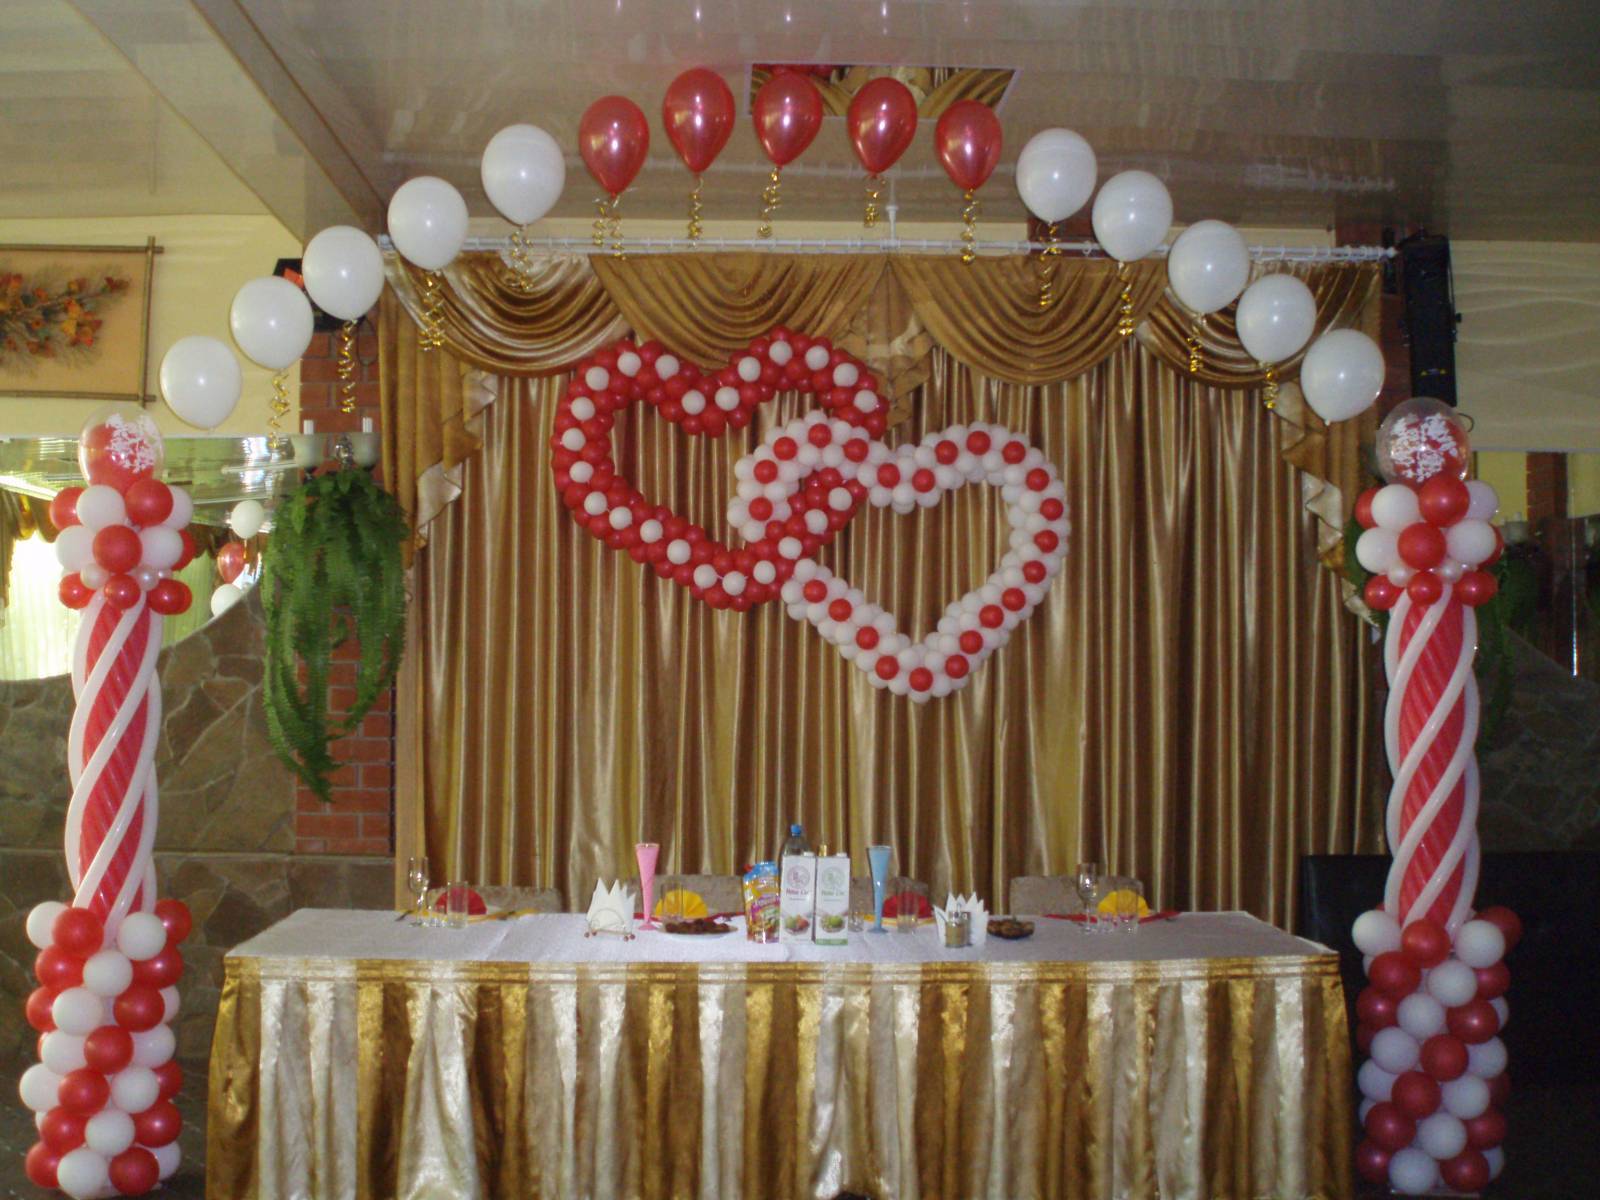 Украшение зала на свадьбу шарами: как оформить свадьбу?